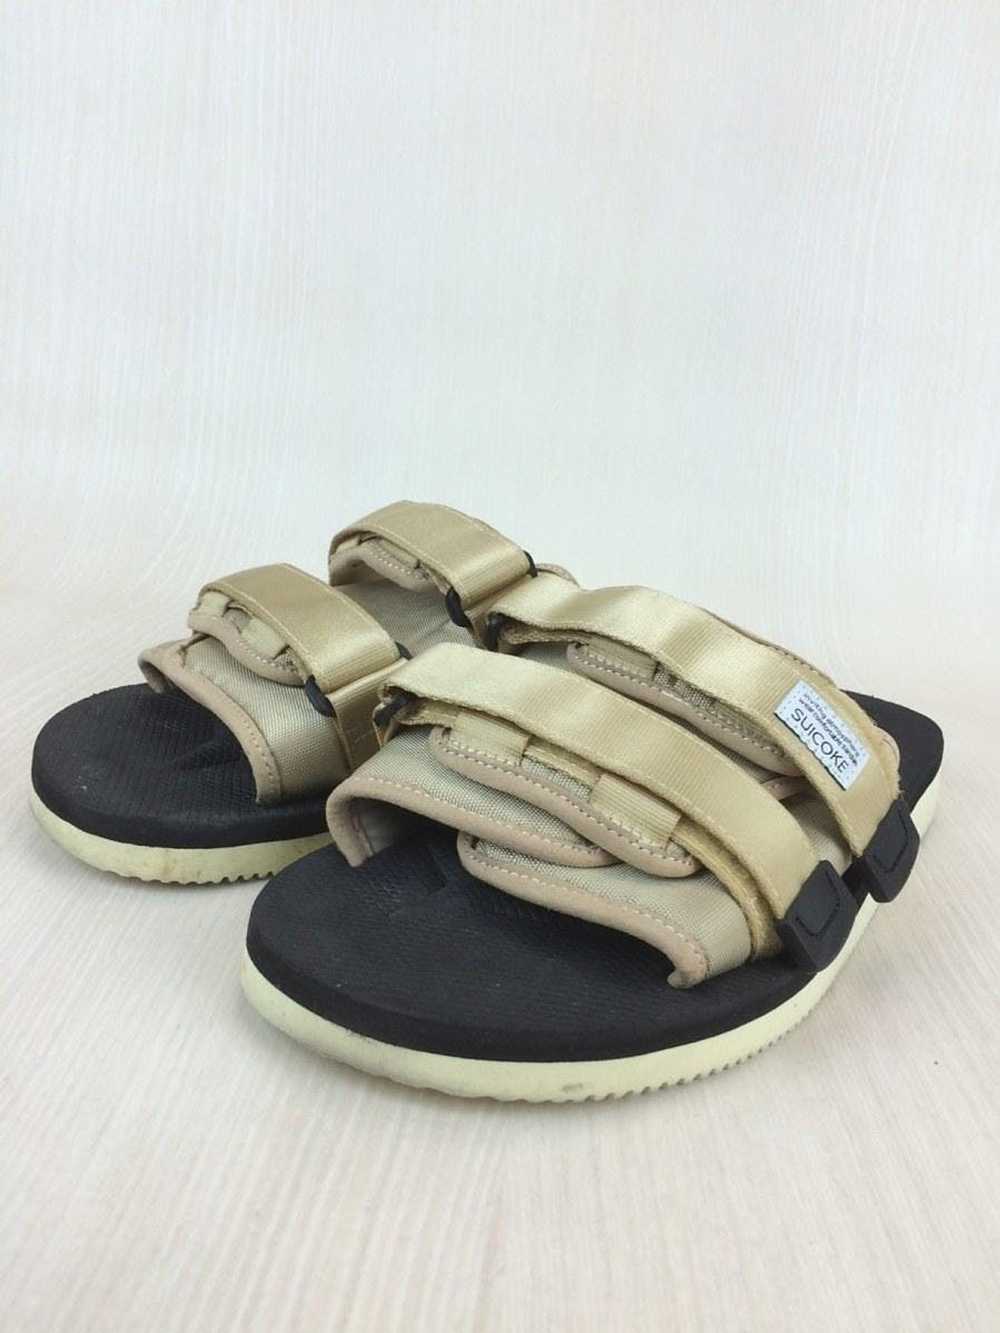 Suicoke Moto Sandals Size 9 - image 1